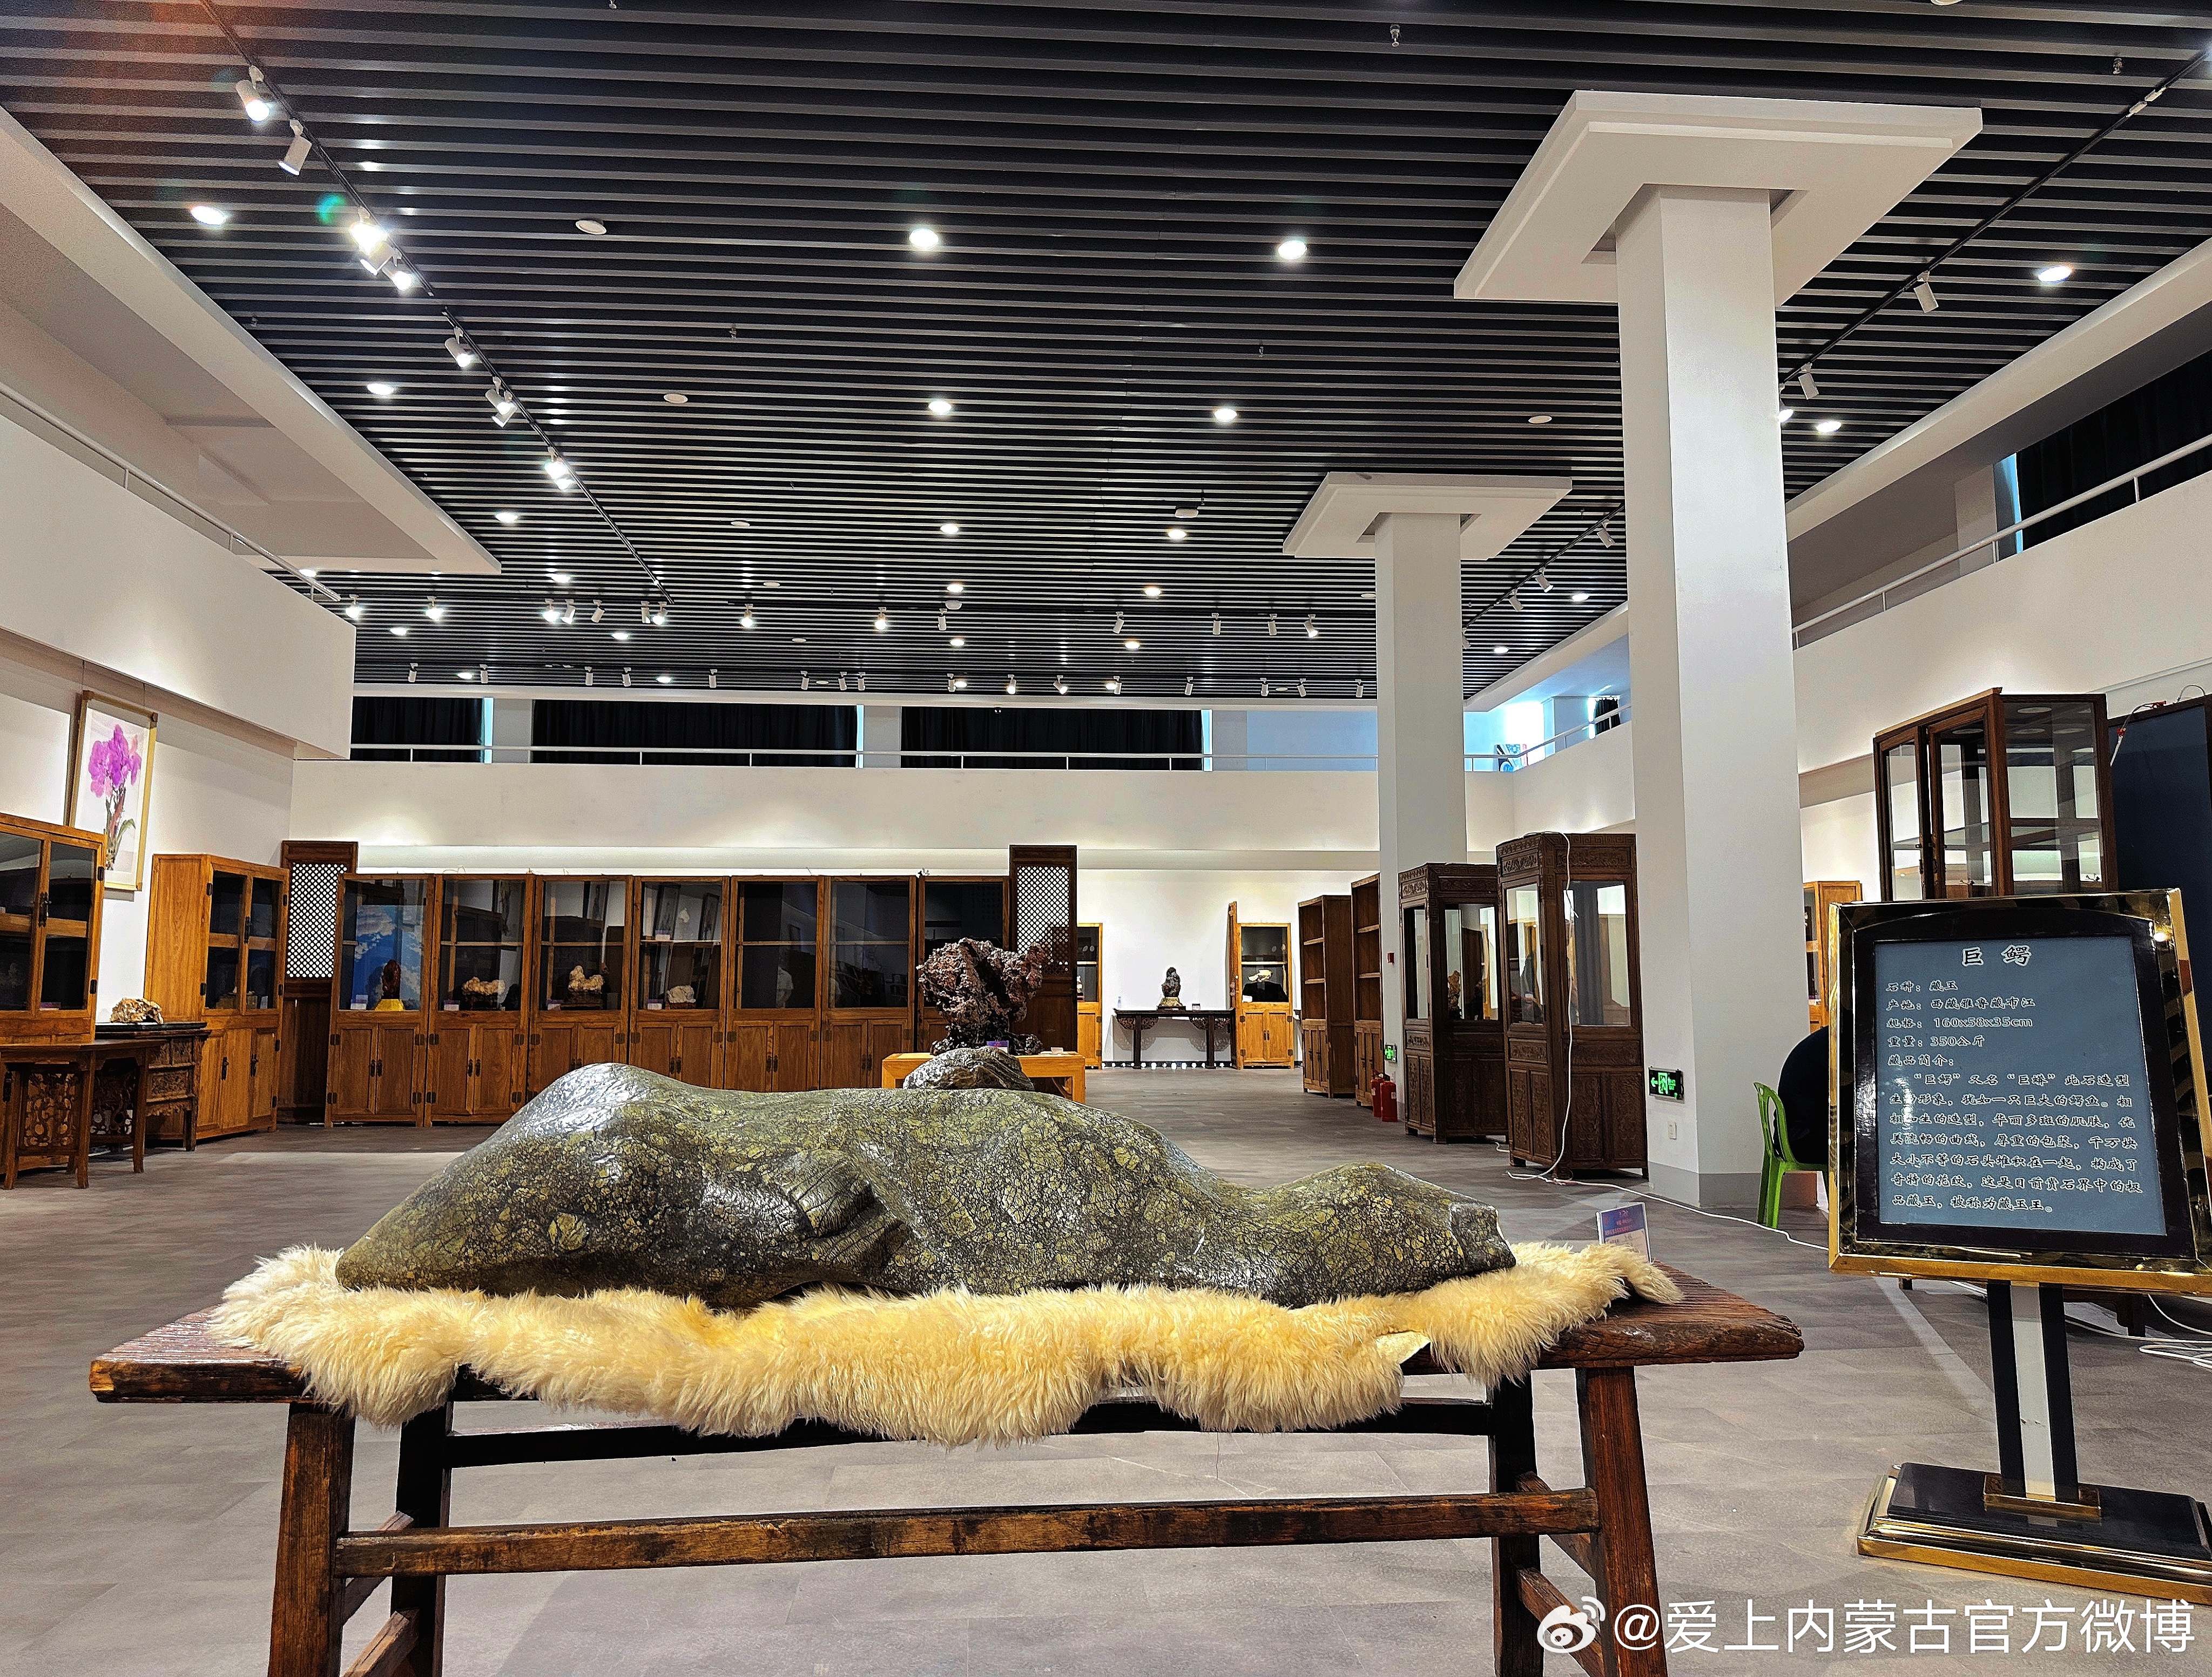 呼和浩特市内蒙古地区的翡翠玉石资源及博物馆收藏概述